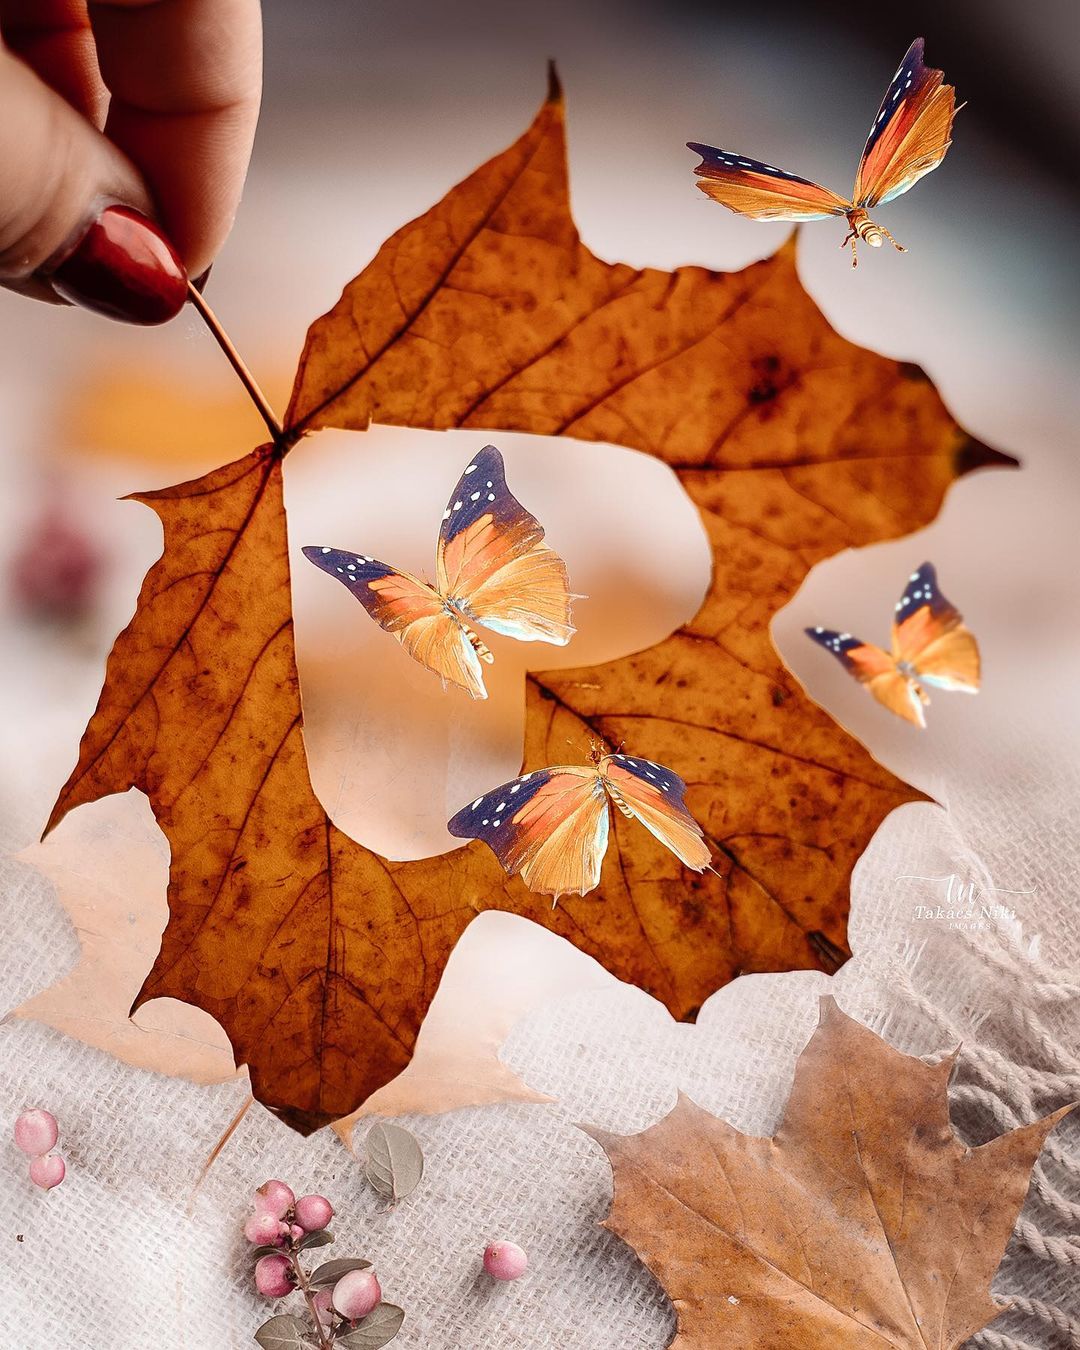 Фото В руке девушки осенний кленовый листок с сердечком среди бабочек